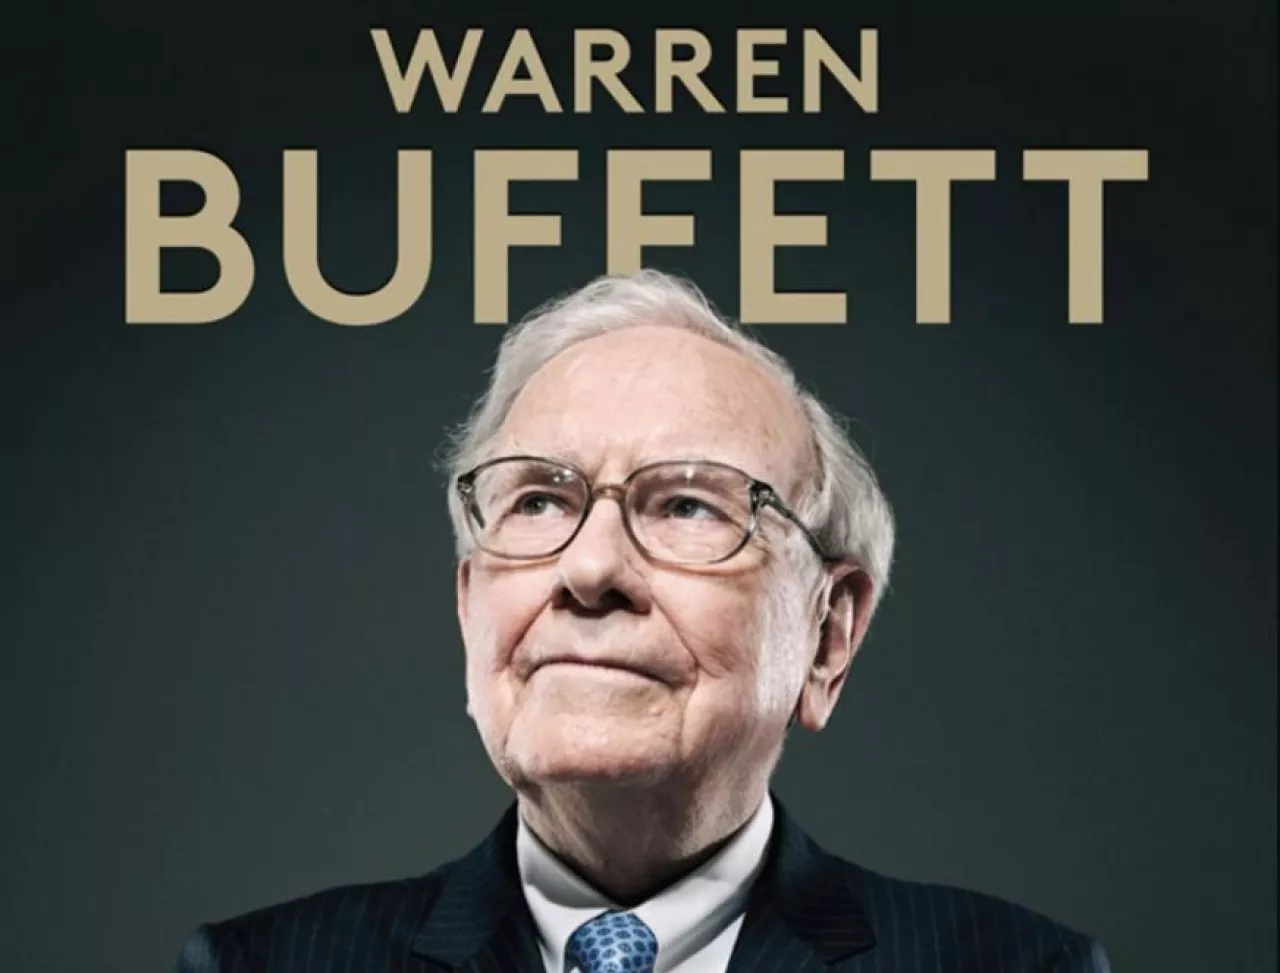 Warren Buffett, inwestor, finansista i jeden z najbogatszych ludzi na świecie (okładka magazynu Forbes)